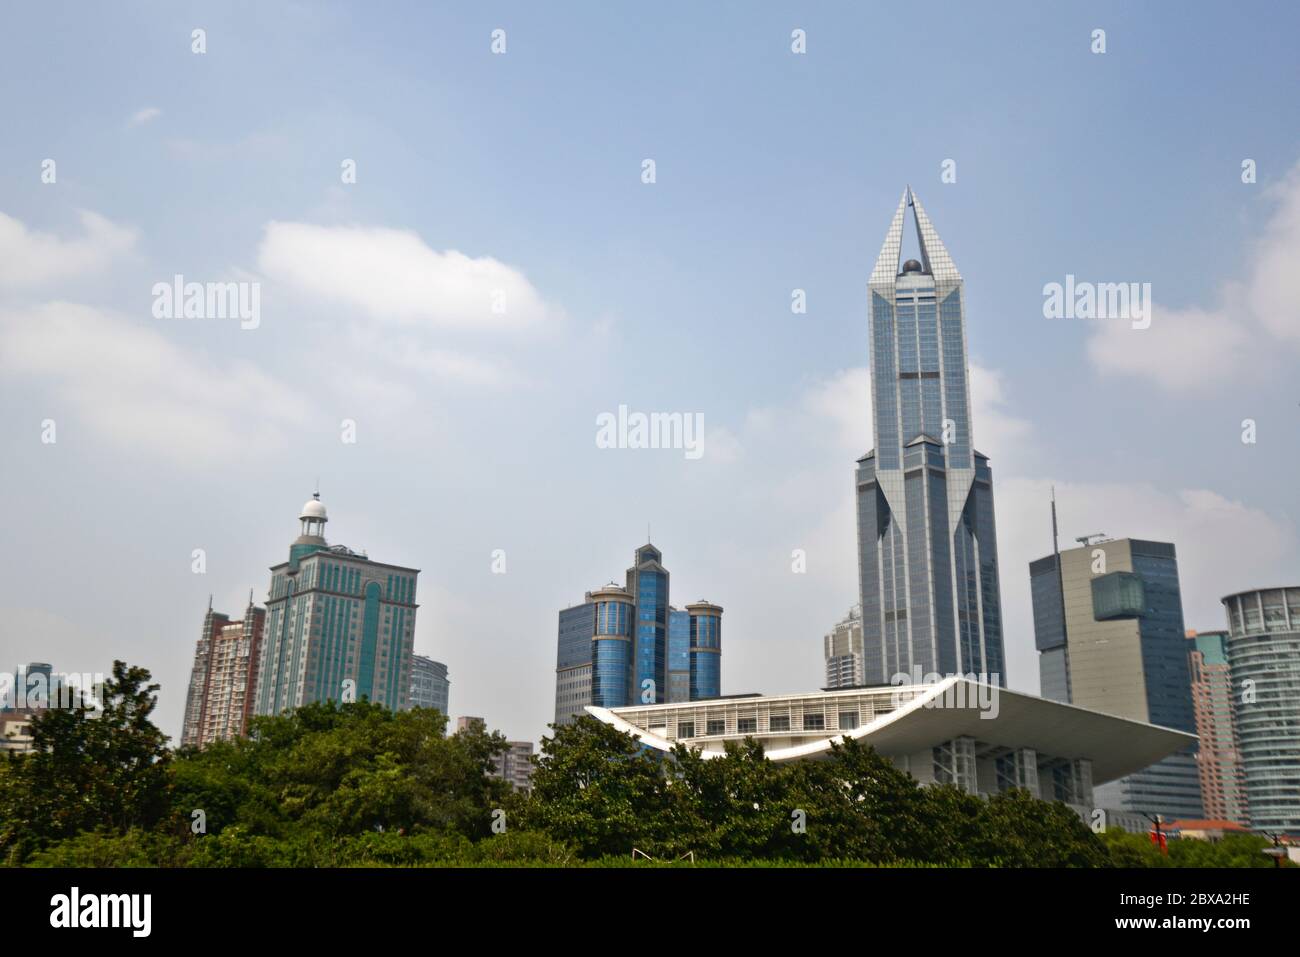 Shanghai: Grand Theatre and Tomorrow Square skyscraper. China Stock Photo